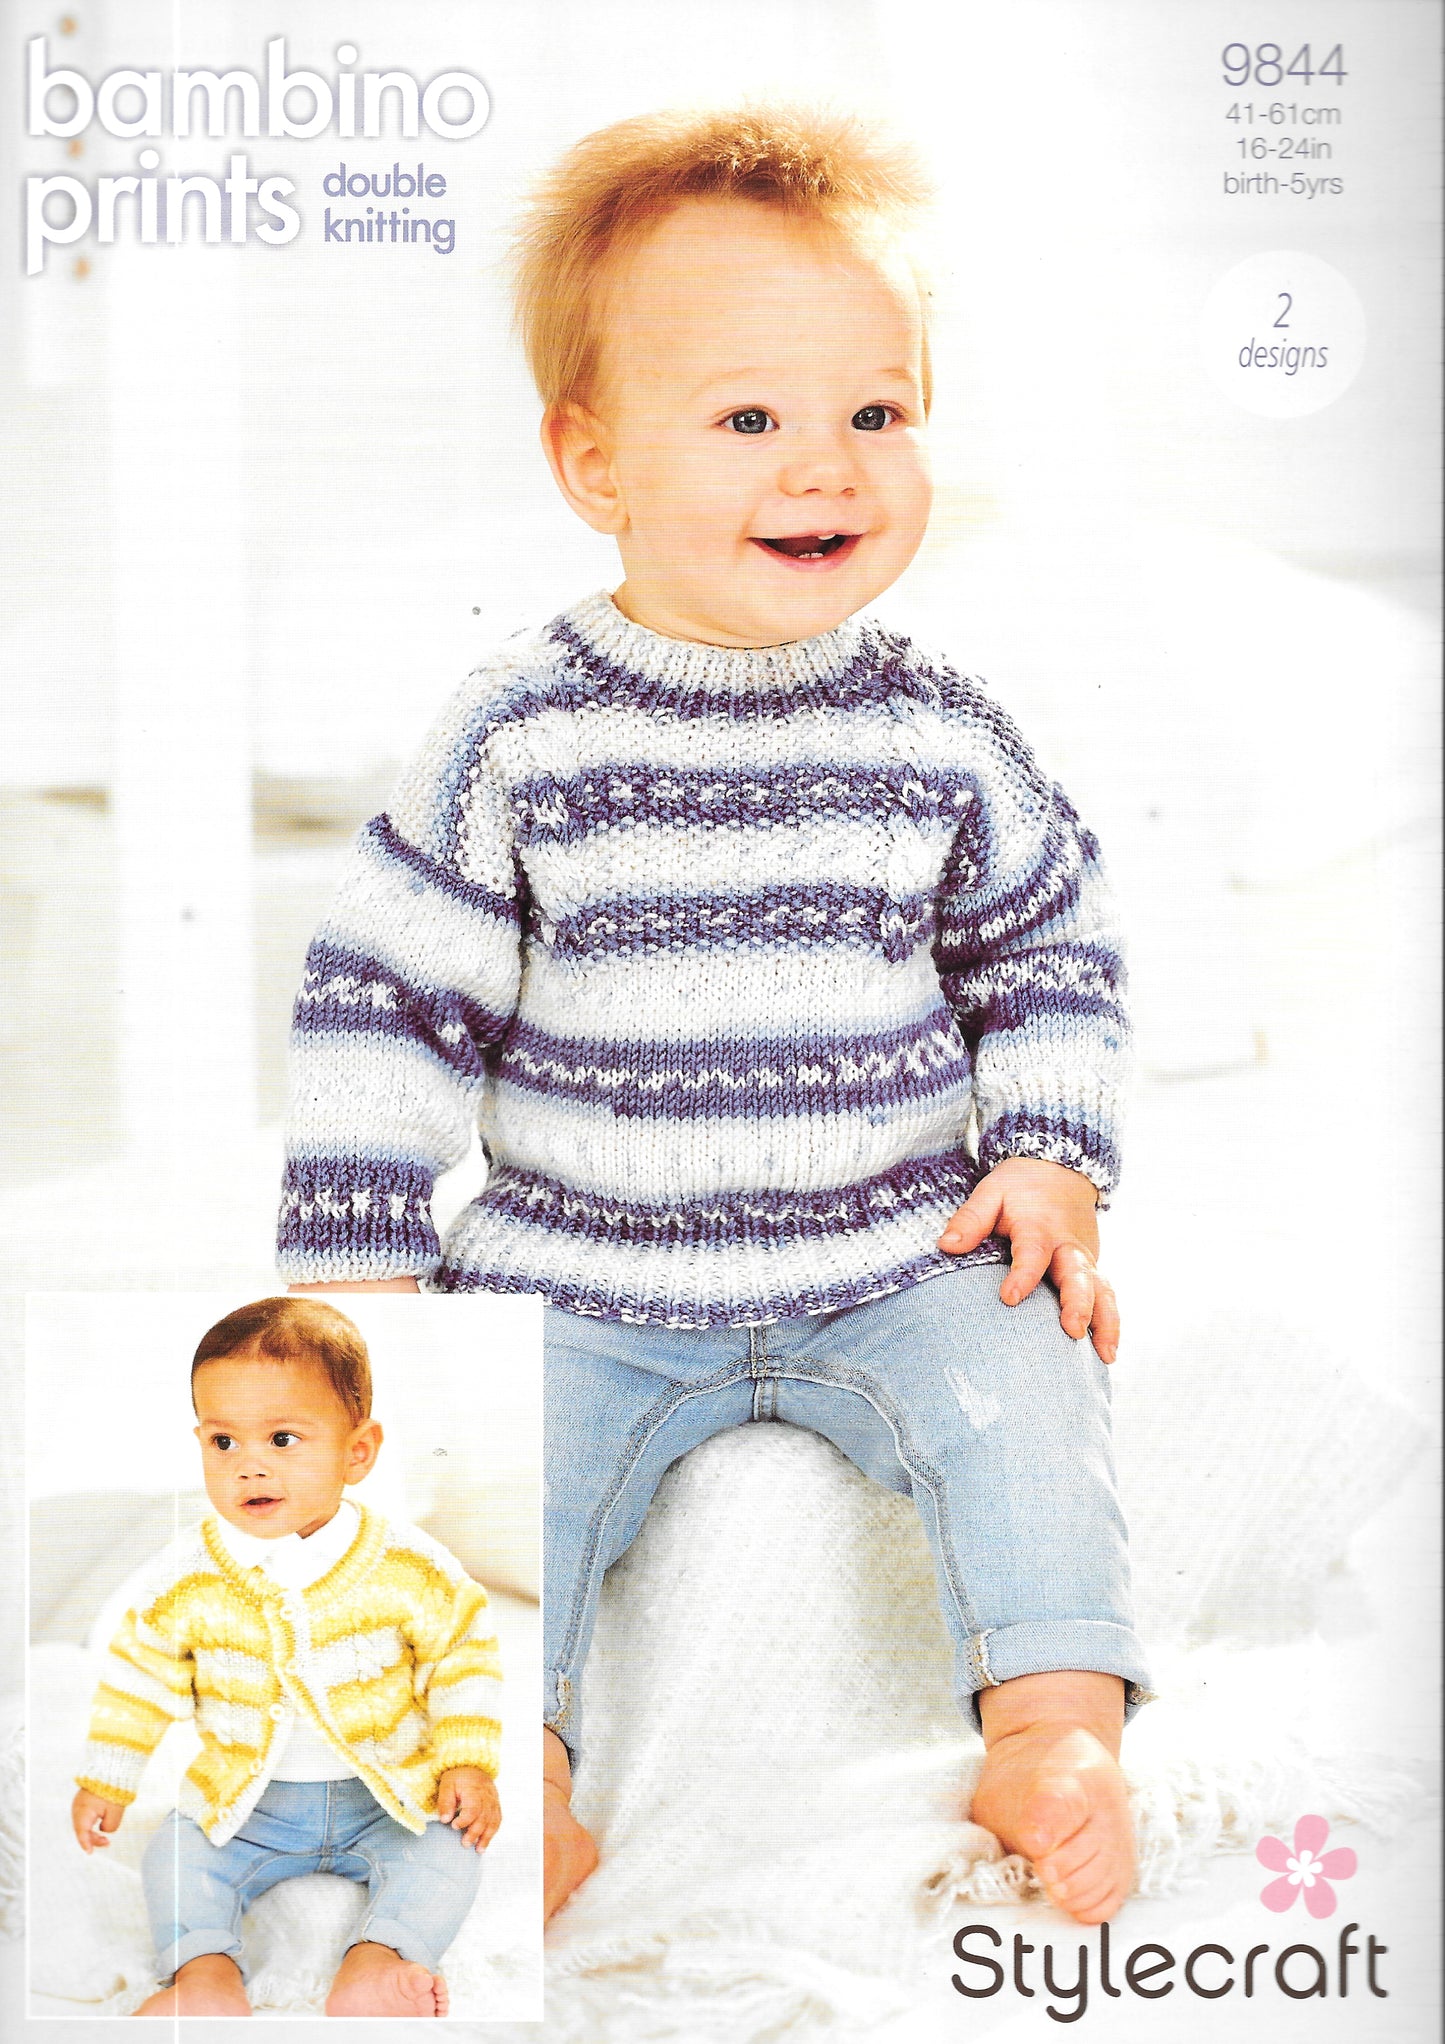 9844 Stylecraft knitting pattern. Child's Cardigan/Sweater. Double Knitting